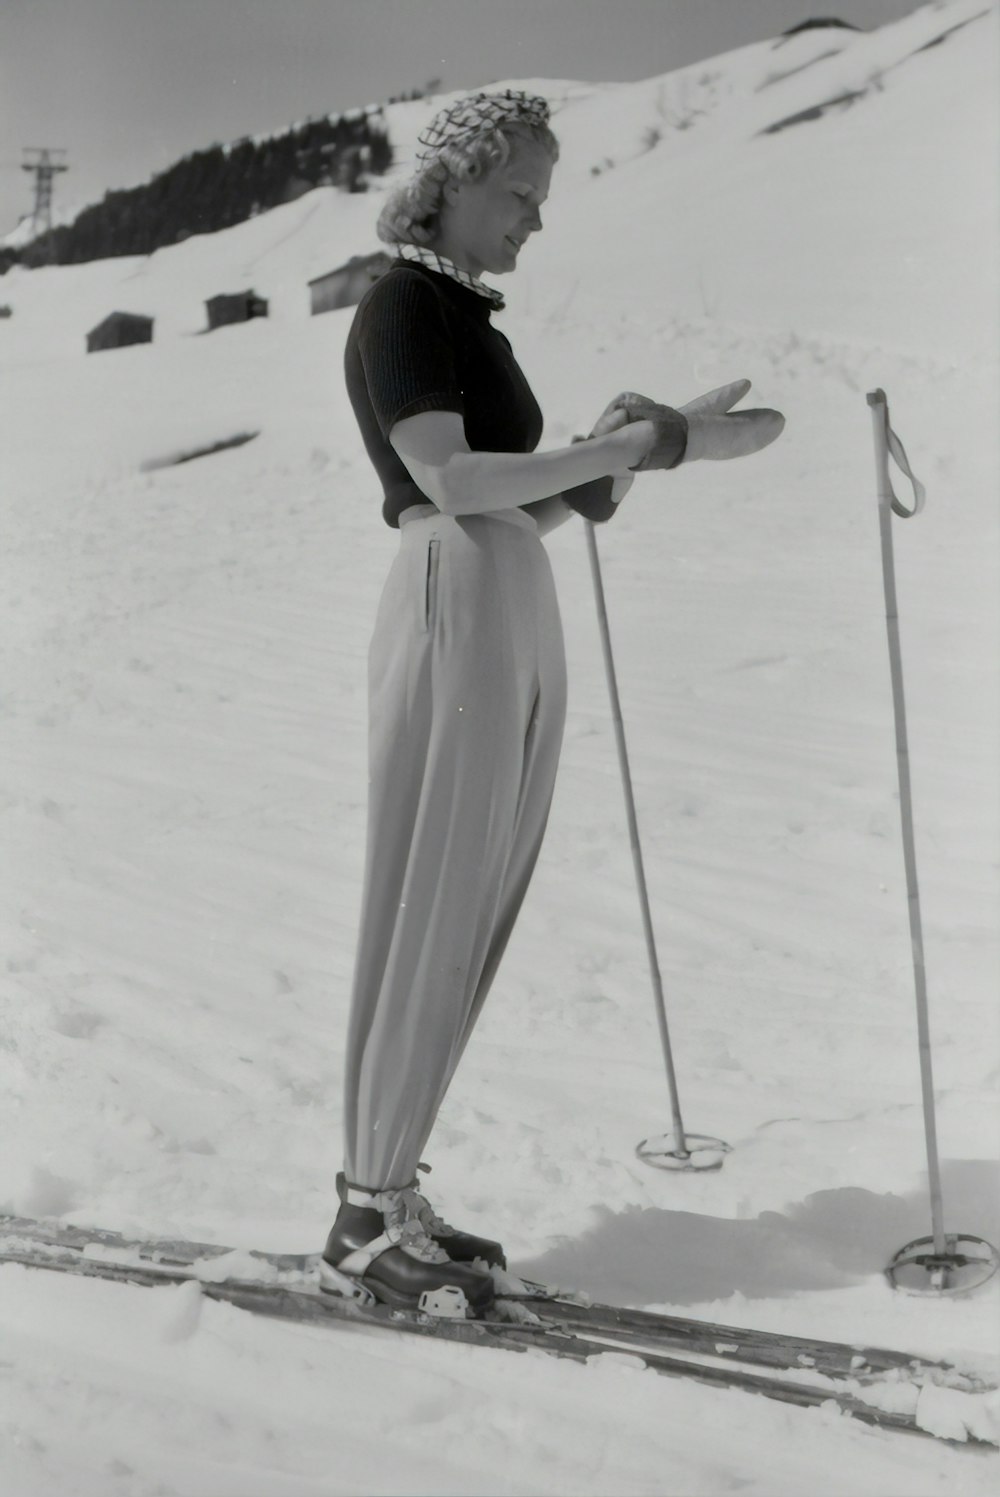 スノーボードを使用する女性のグレースケール写真